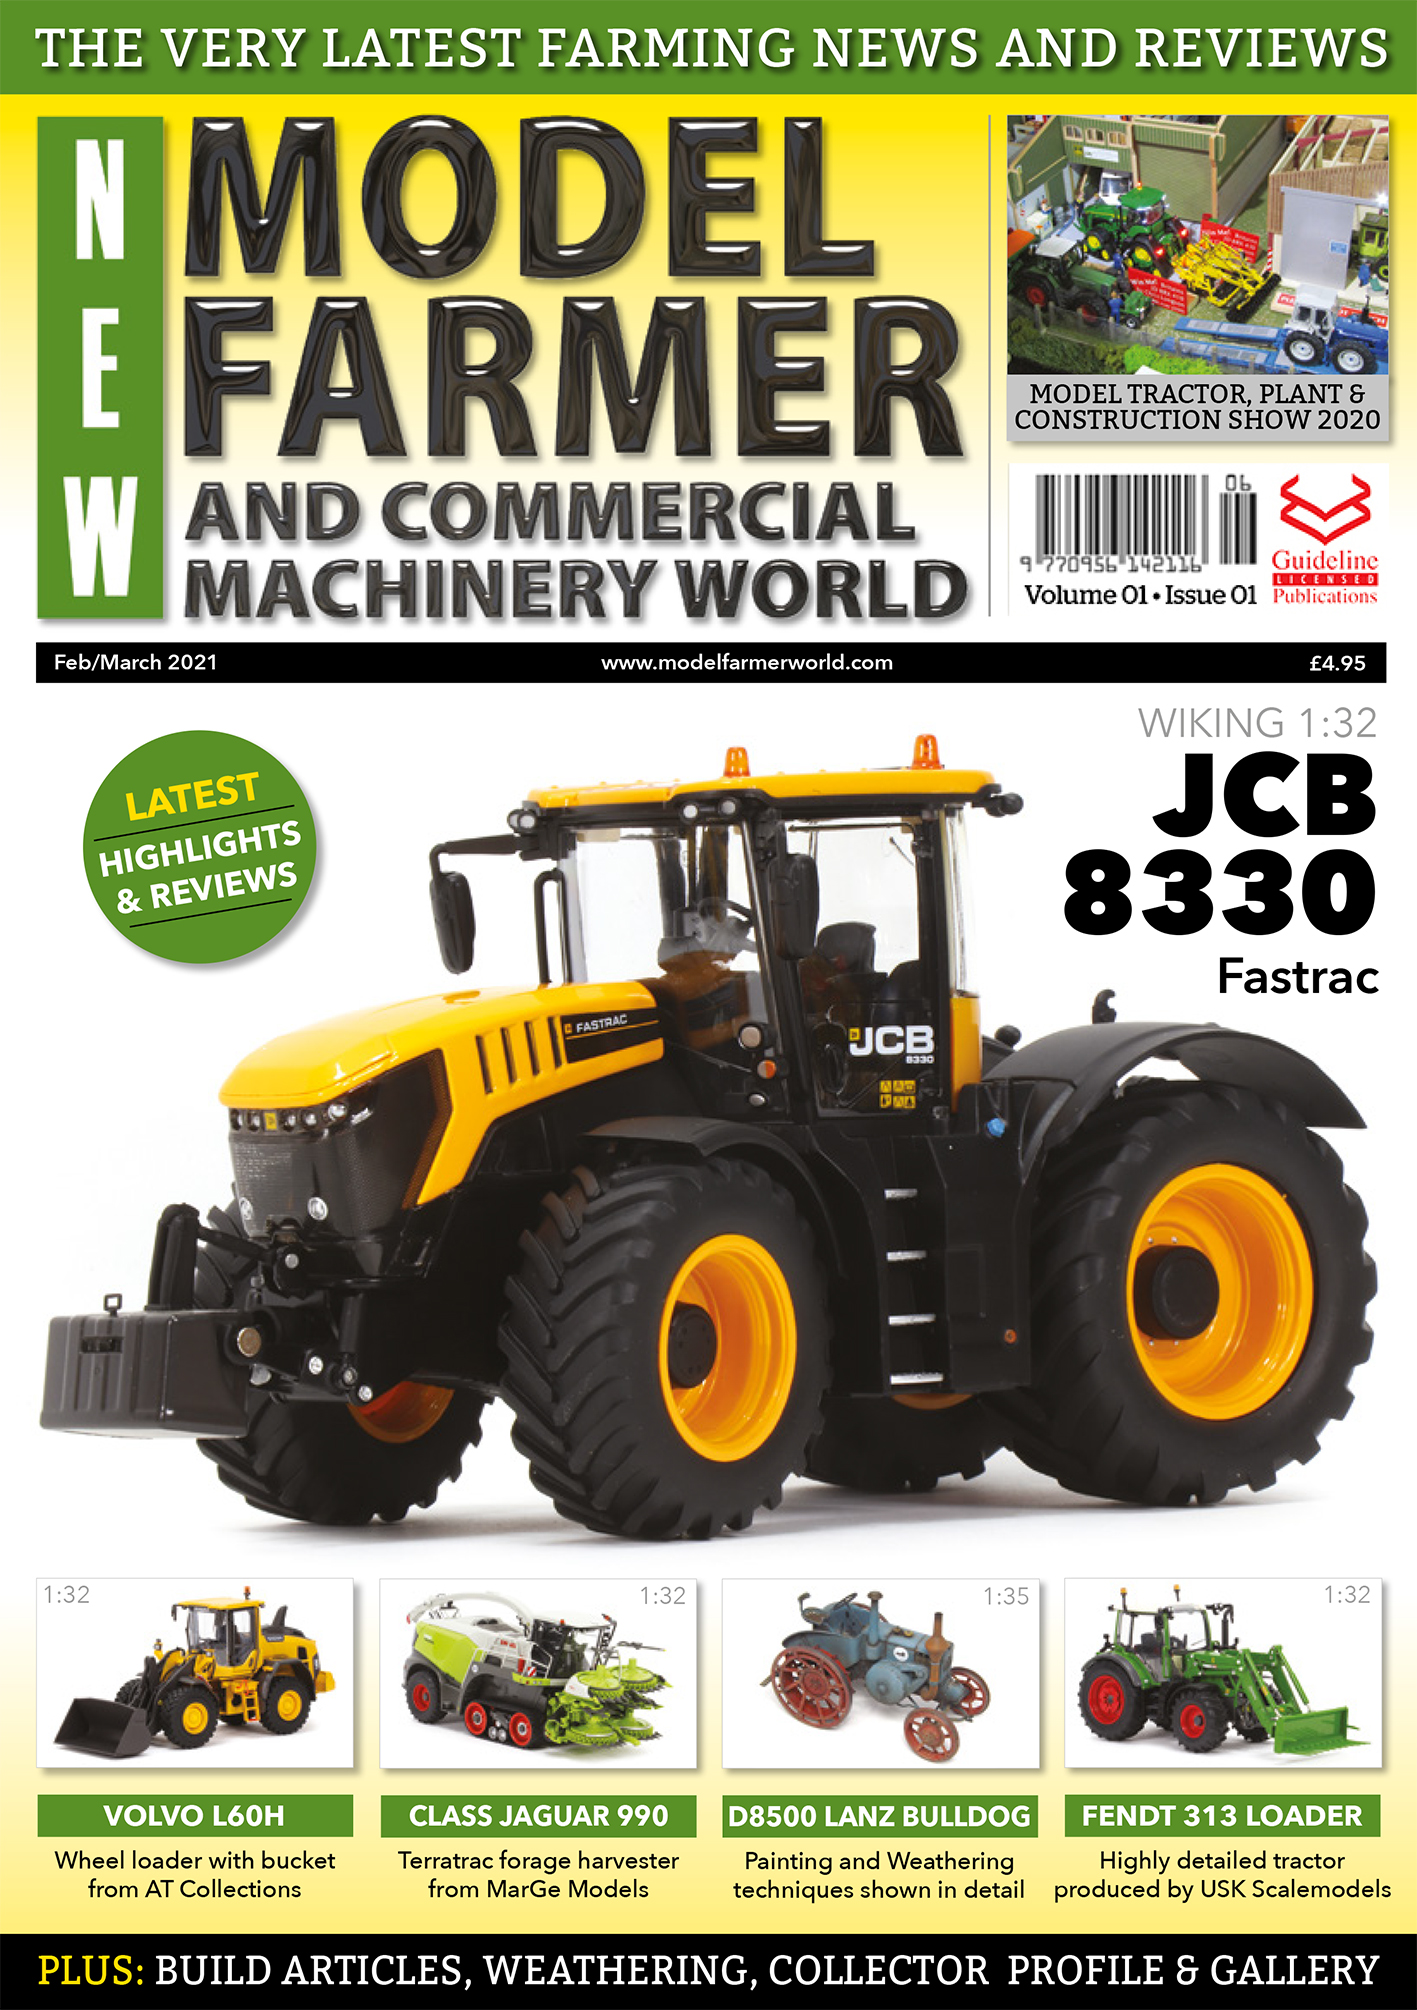 Guideline Publications Ltd New Model Farmer  Issue 01 Editor Steven Downs 